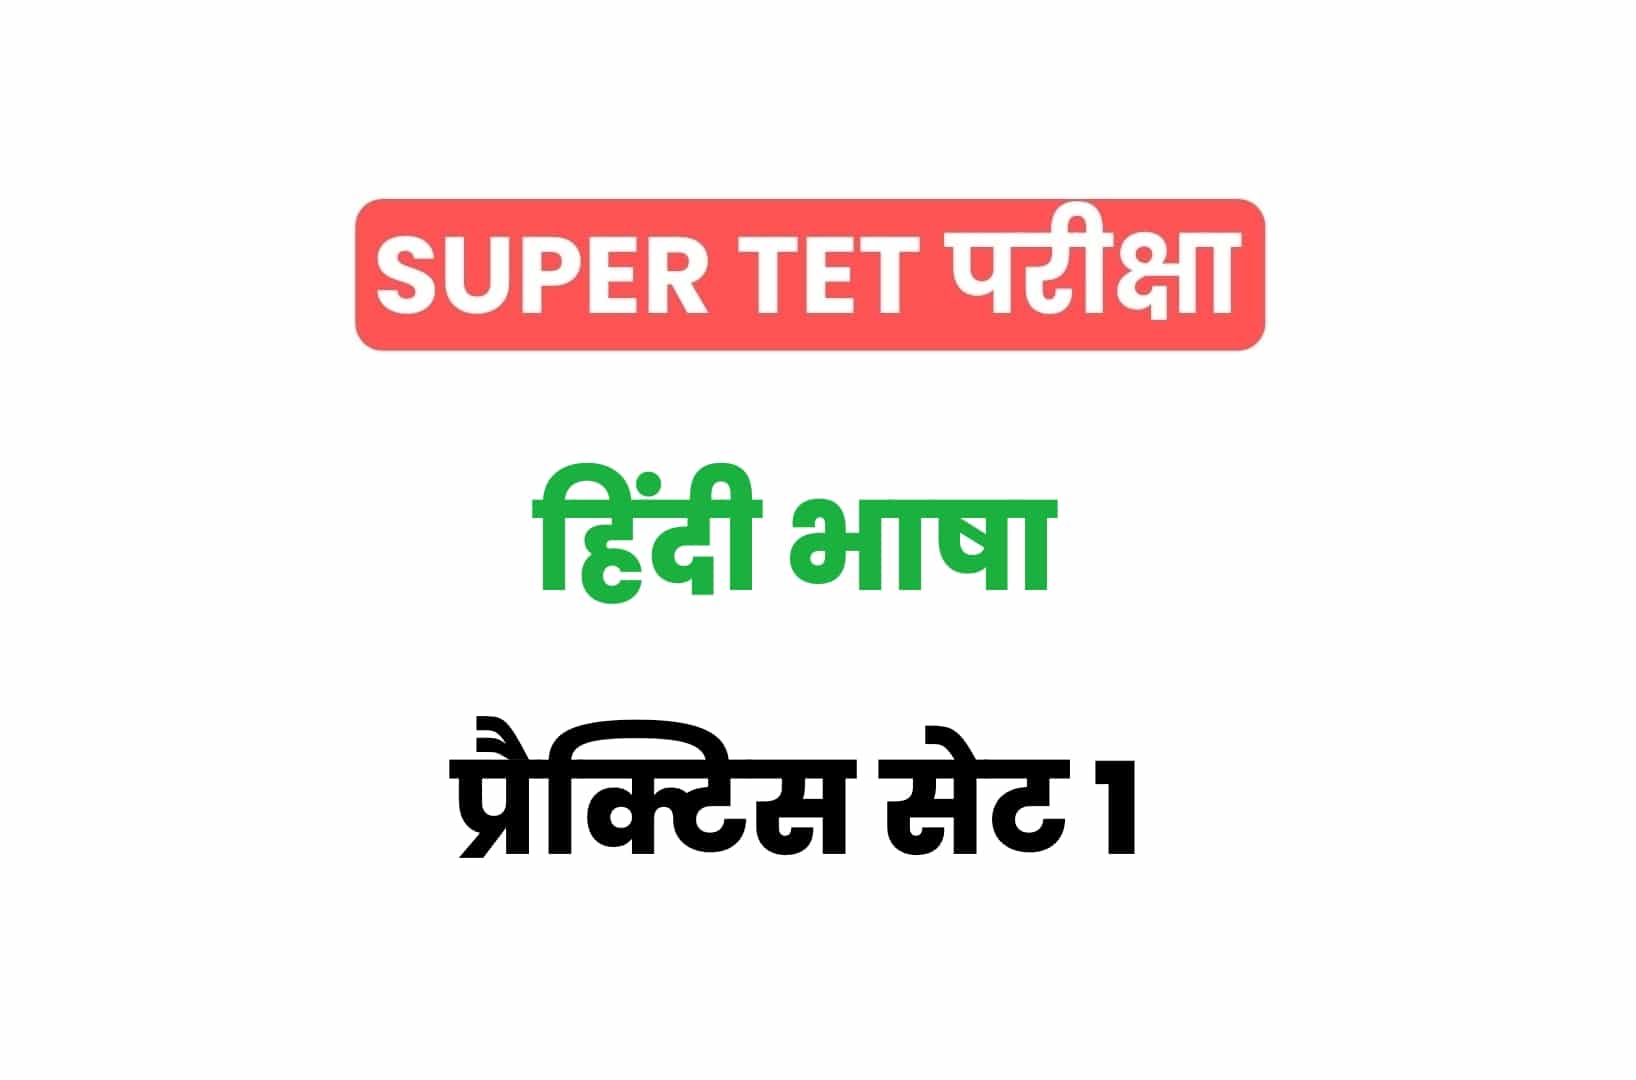 SUPER TET 2022 हिंदी प्रैक्टिस सेट 1: हिंदी के 15 ऐसे महत्वपूर्ण प्रश्नों का संग्रह जो आगामी सुपर टेट परीक्षा में पूछे जा सकते हैं, अवश्य देखें